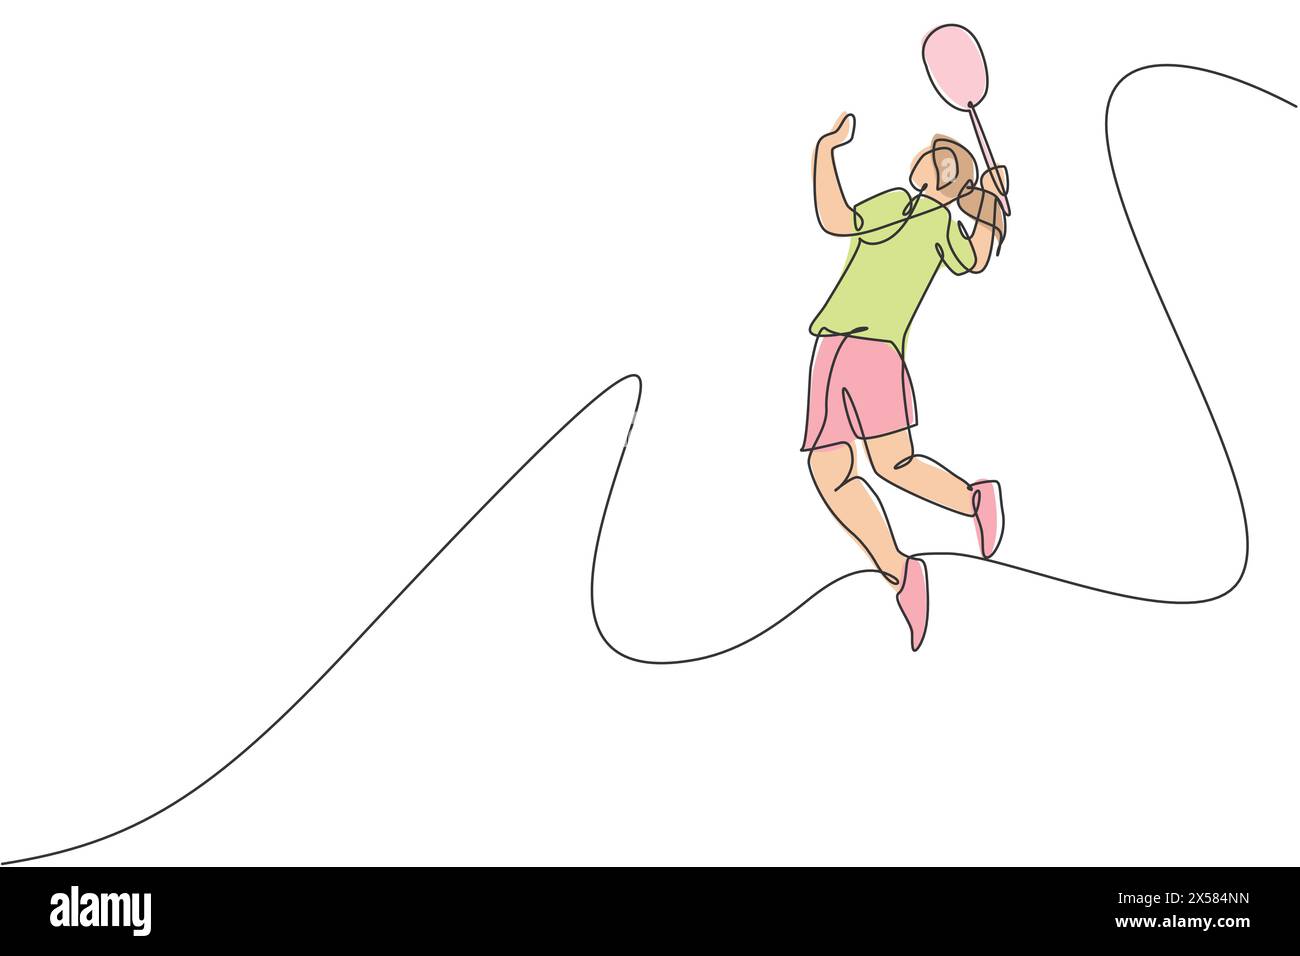 Un dessin simple ligne de jeune joueur de badminton énergique sautant et smash volante illustration vectorielle. Concept de sport sain. Continuou moderne Illustration de Vecteur